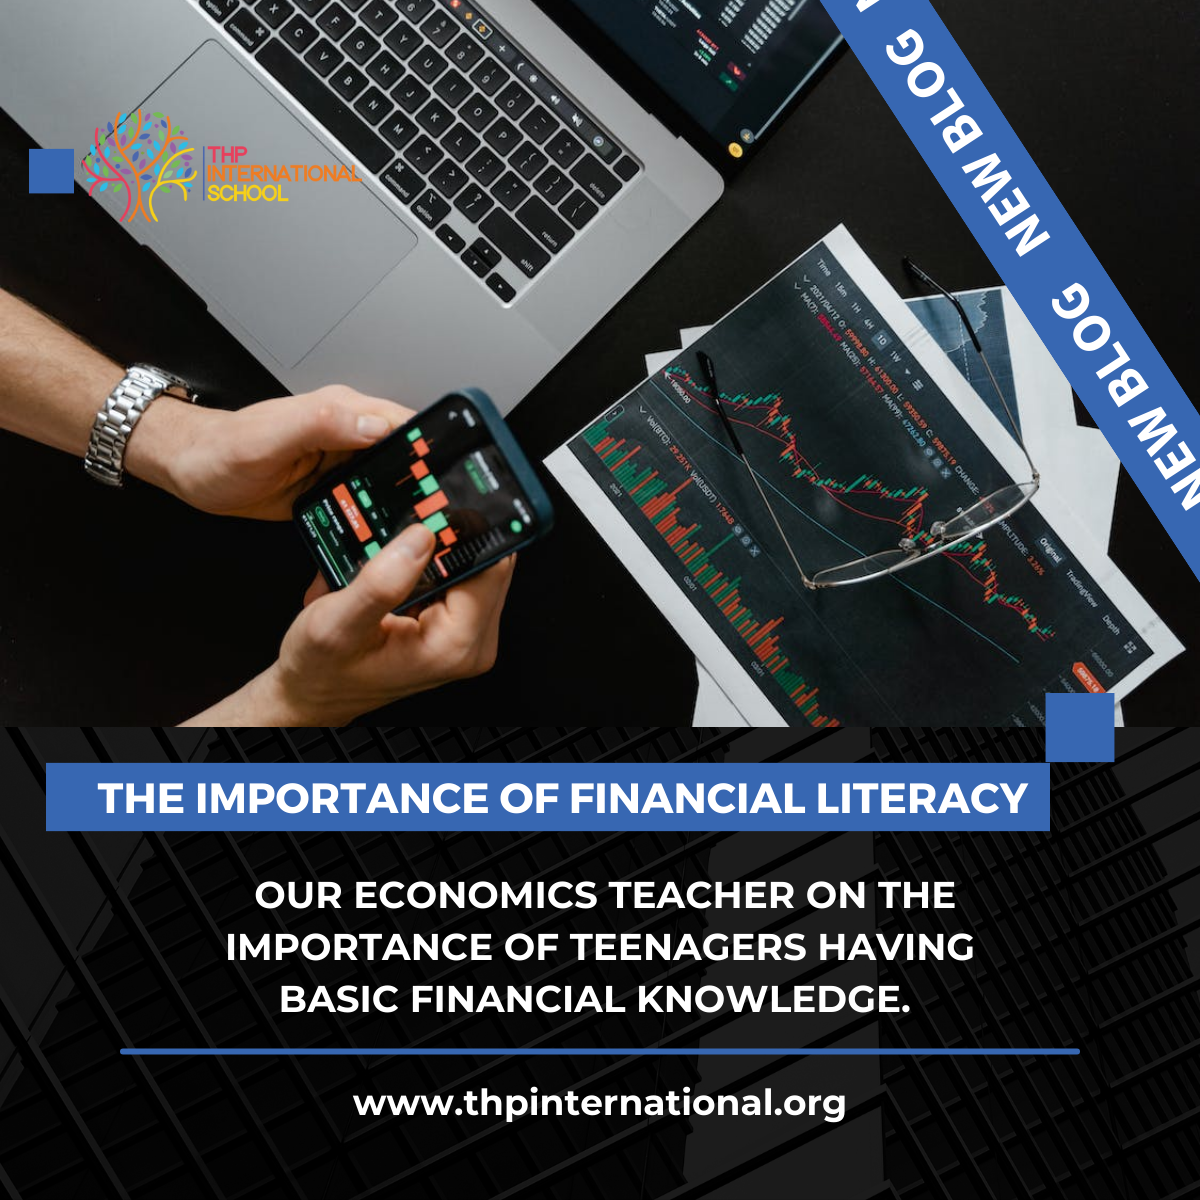 La importancia de la educación financiera para los adolescentes